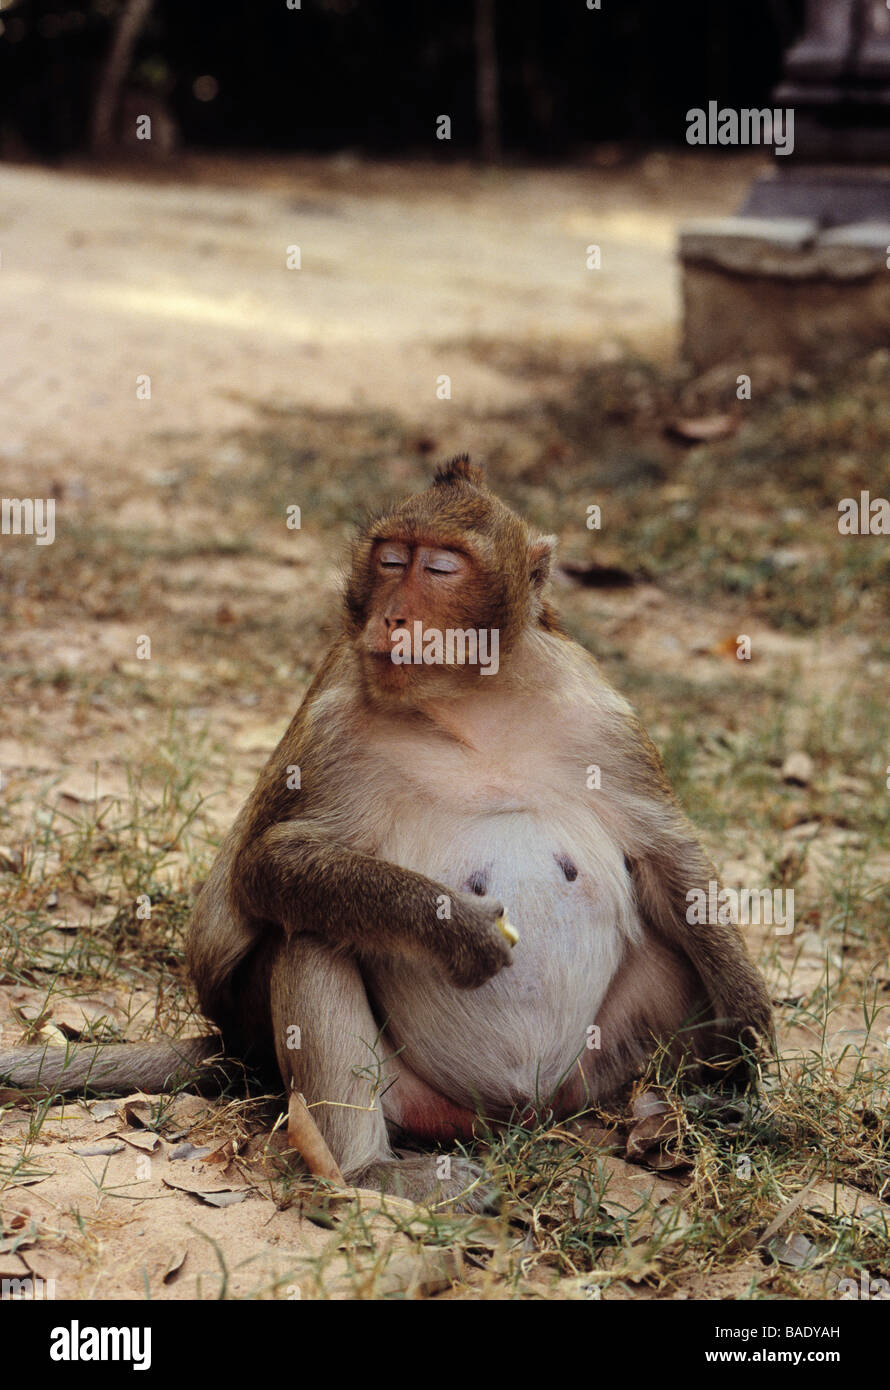 Monkey at Angkor Wat, Cambodia Stock Photo